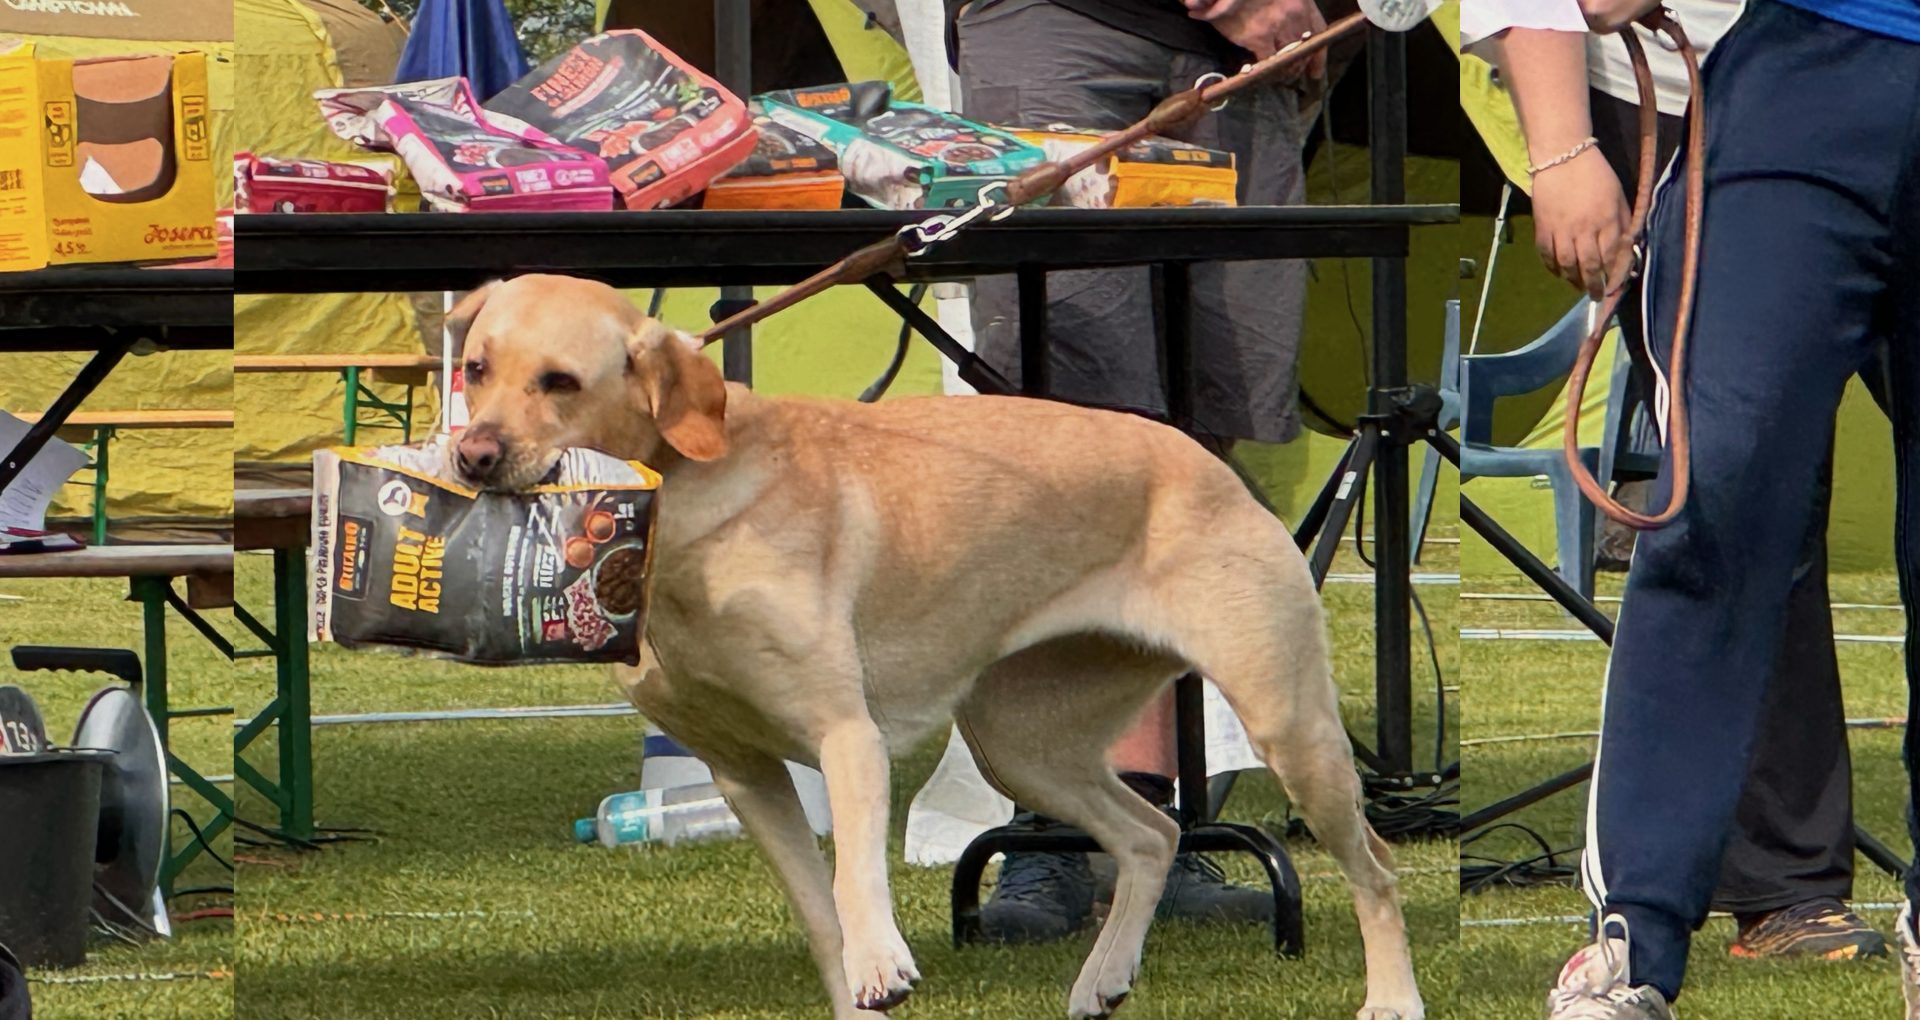 Ein Hund trägt als Belohnung einen Futtersack von unserem Sponsor Belcando im Maul.